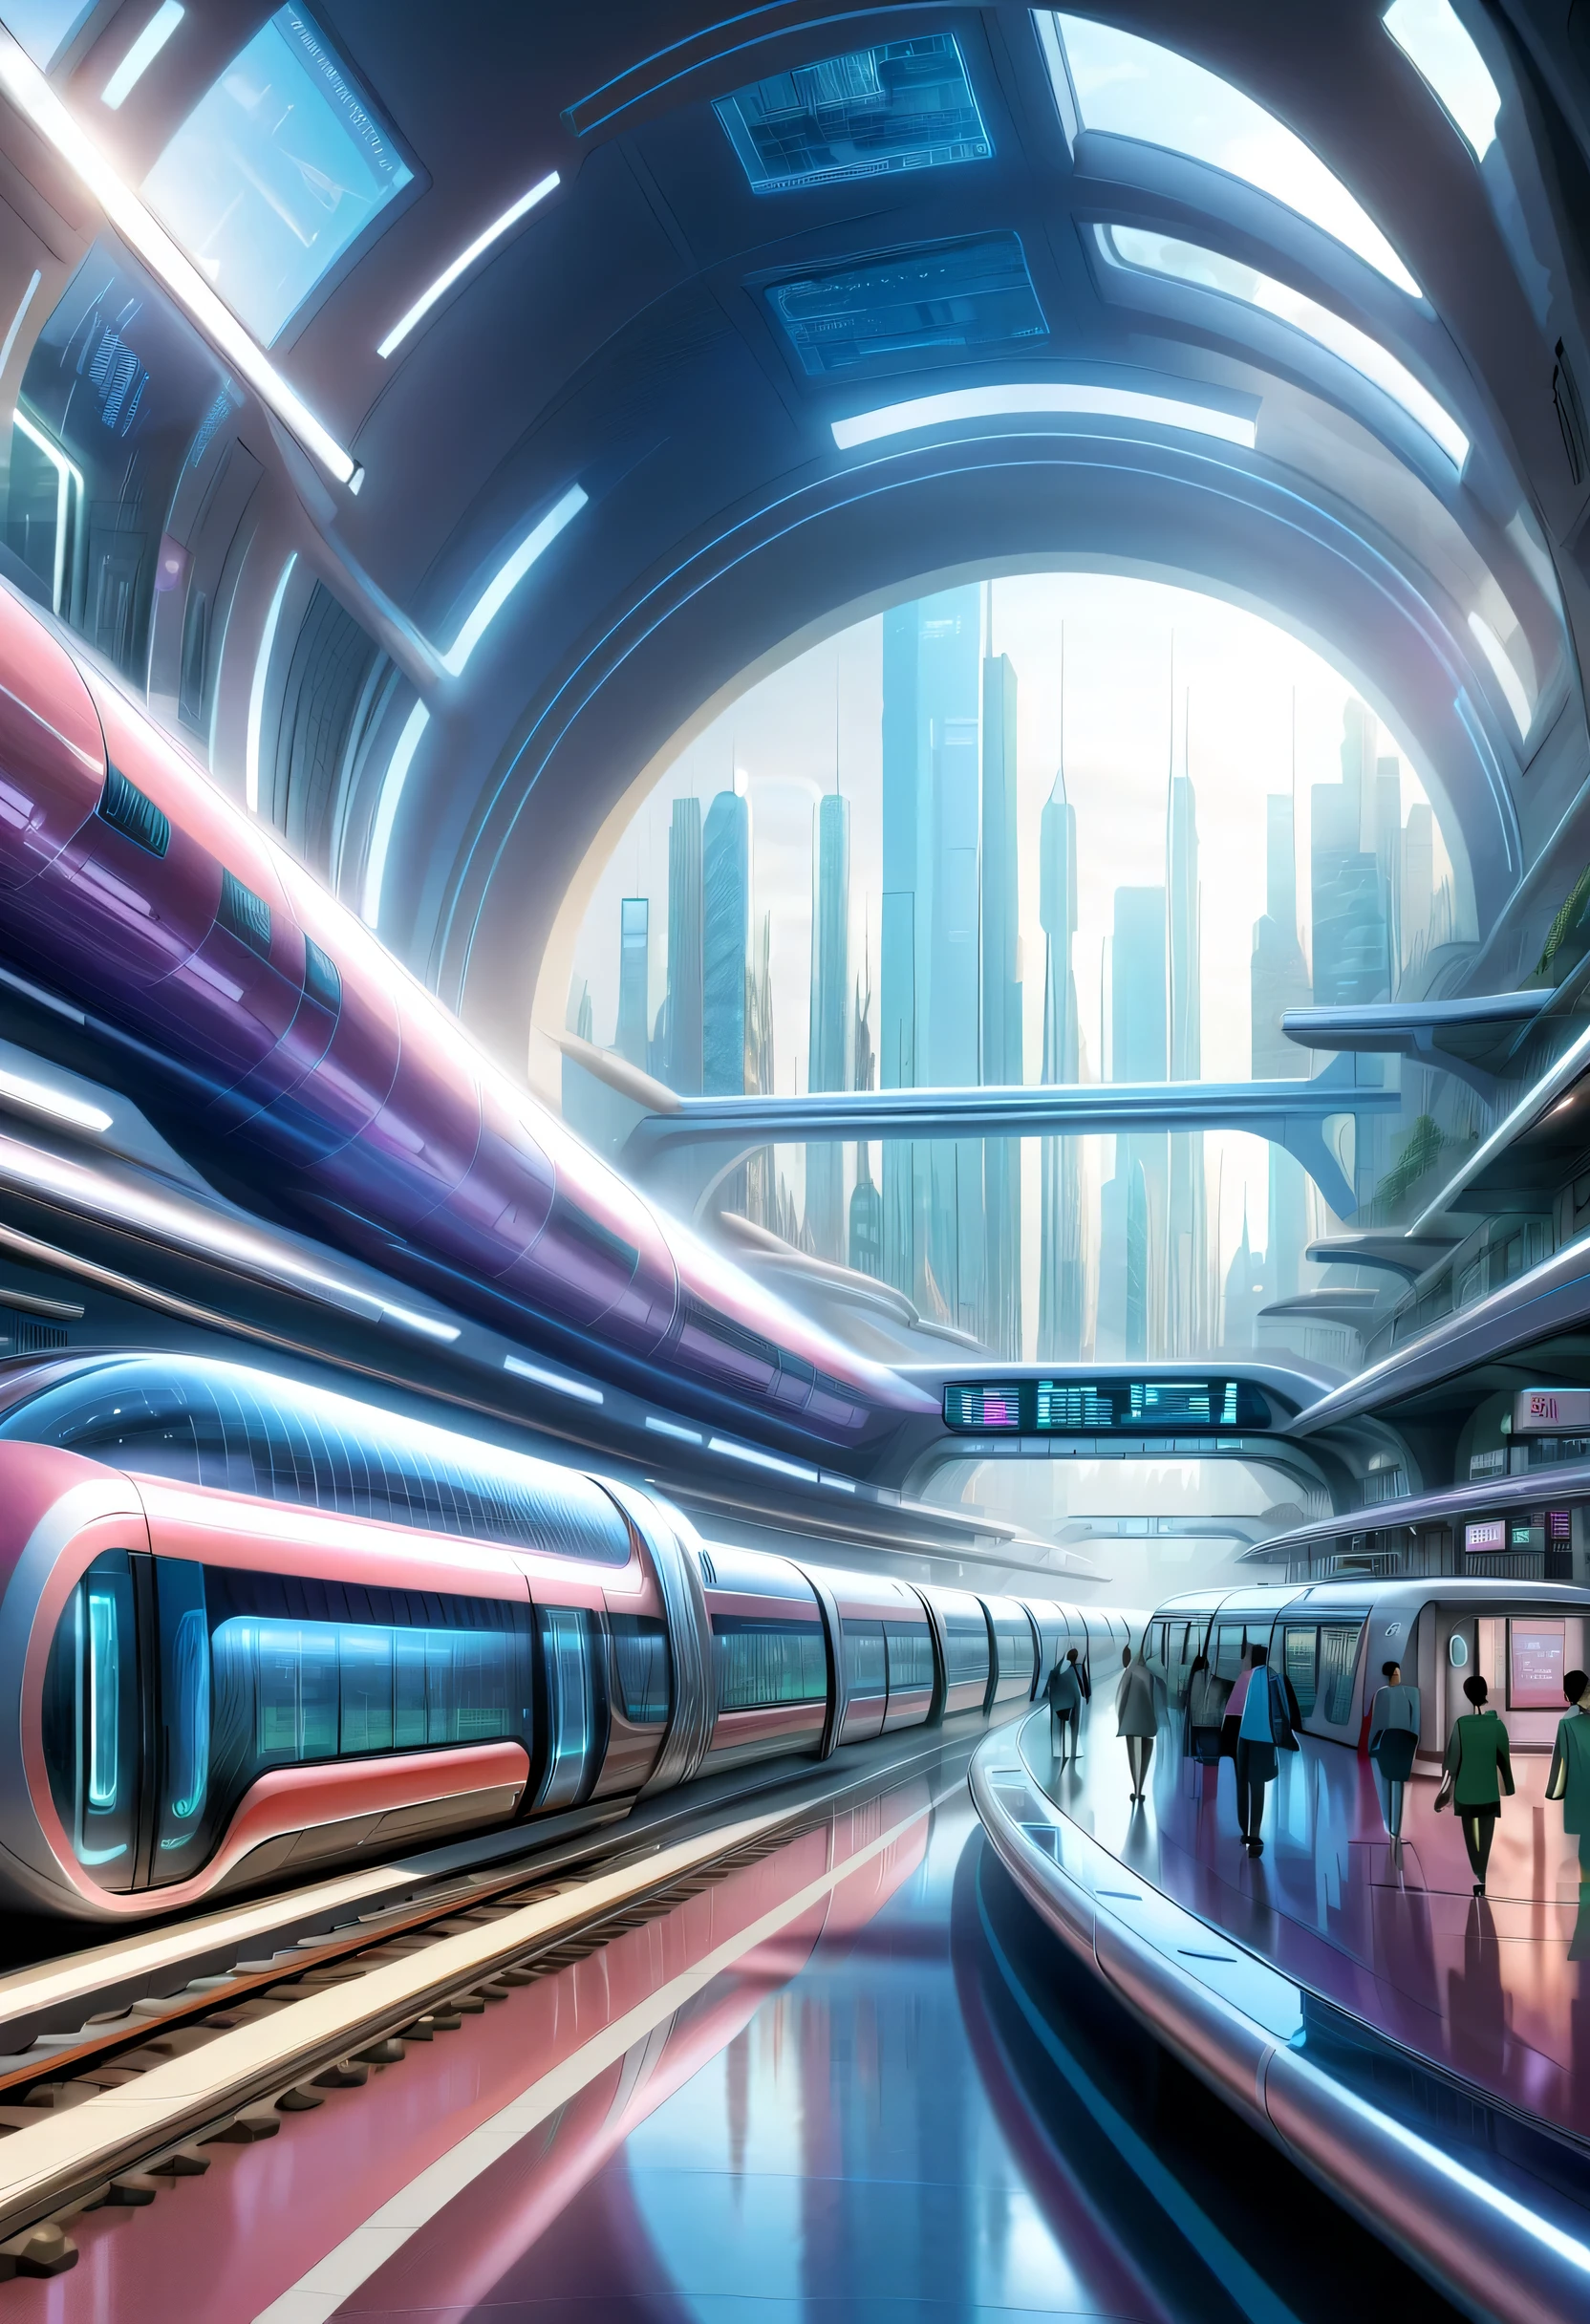 อนาคตの首都に駅を描く,หลอดใส:หลายรายการ:รถไฟกำลังวิ่งอยู่ข้างใน,อนาคต都市,สถานีปลายทาง,หลายรายการの鉄道が接続する駅,อนาคต,ทำความคุ้นเคย